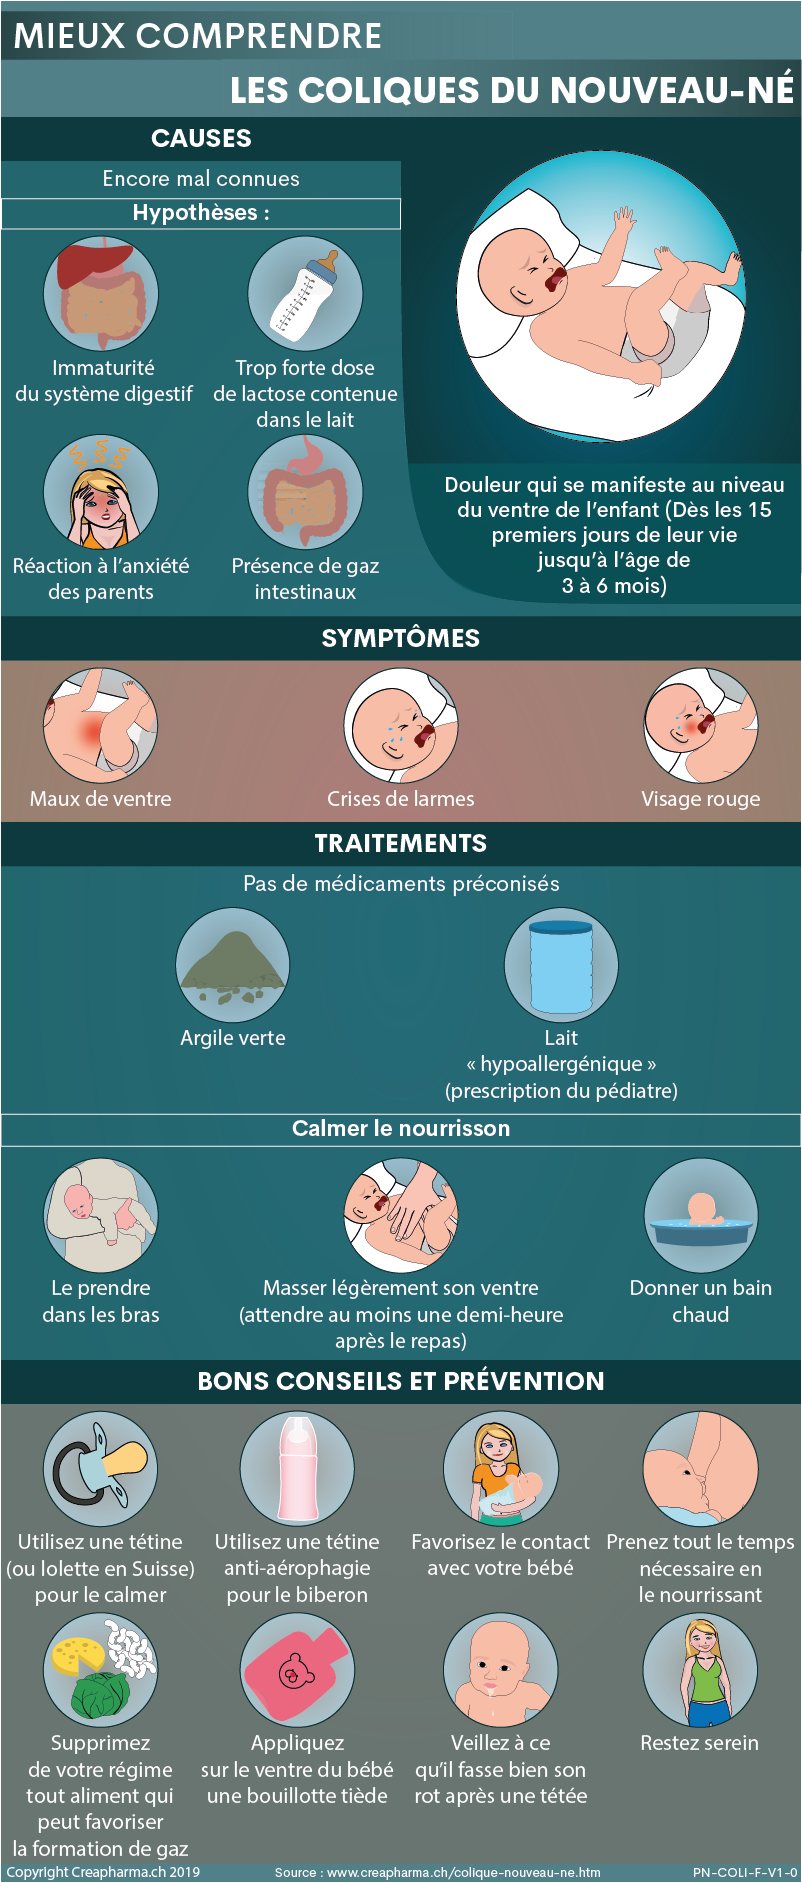 Coliques du nouveau-né : causes & traitements